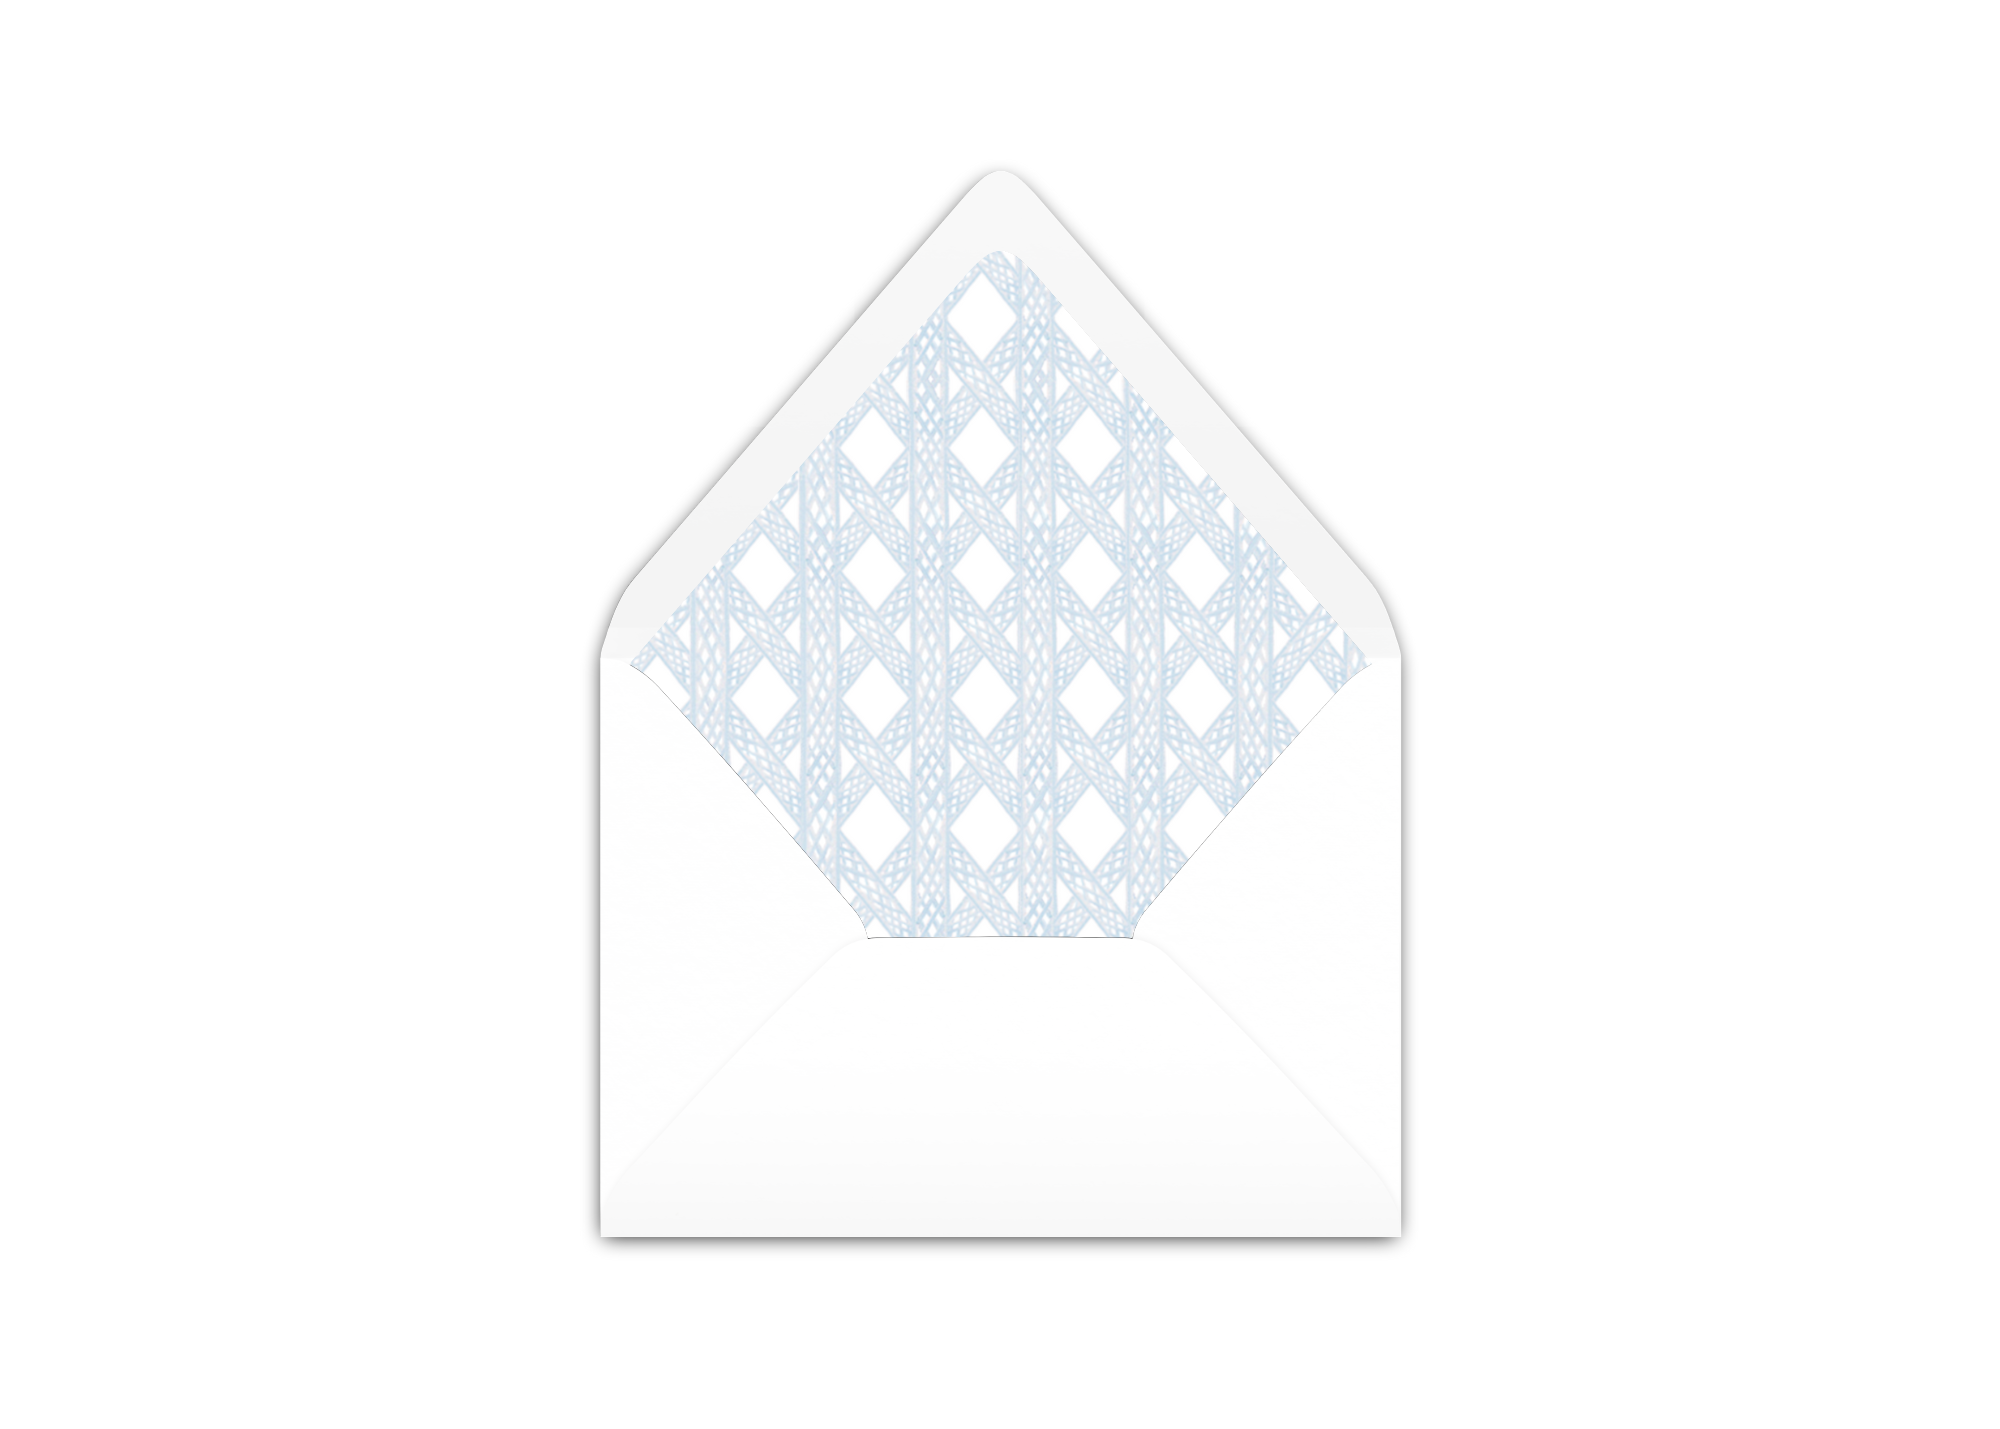 Envelope Liner